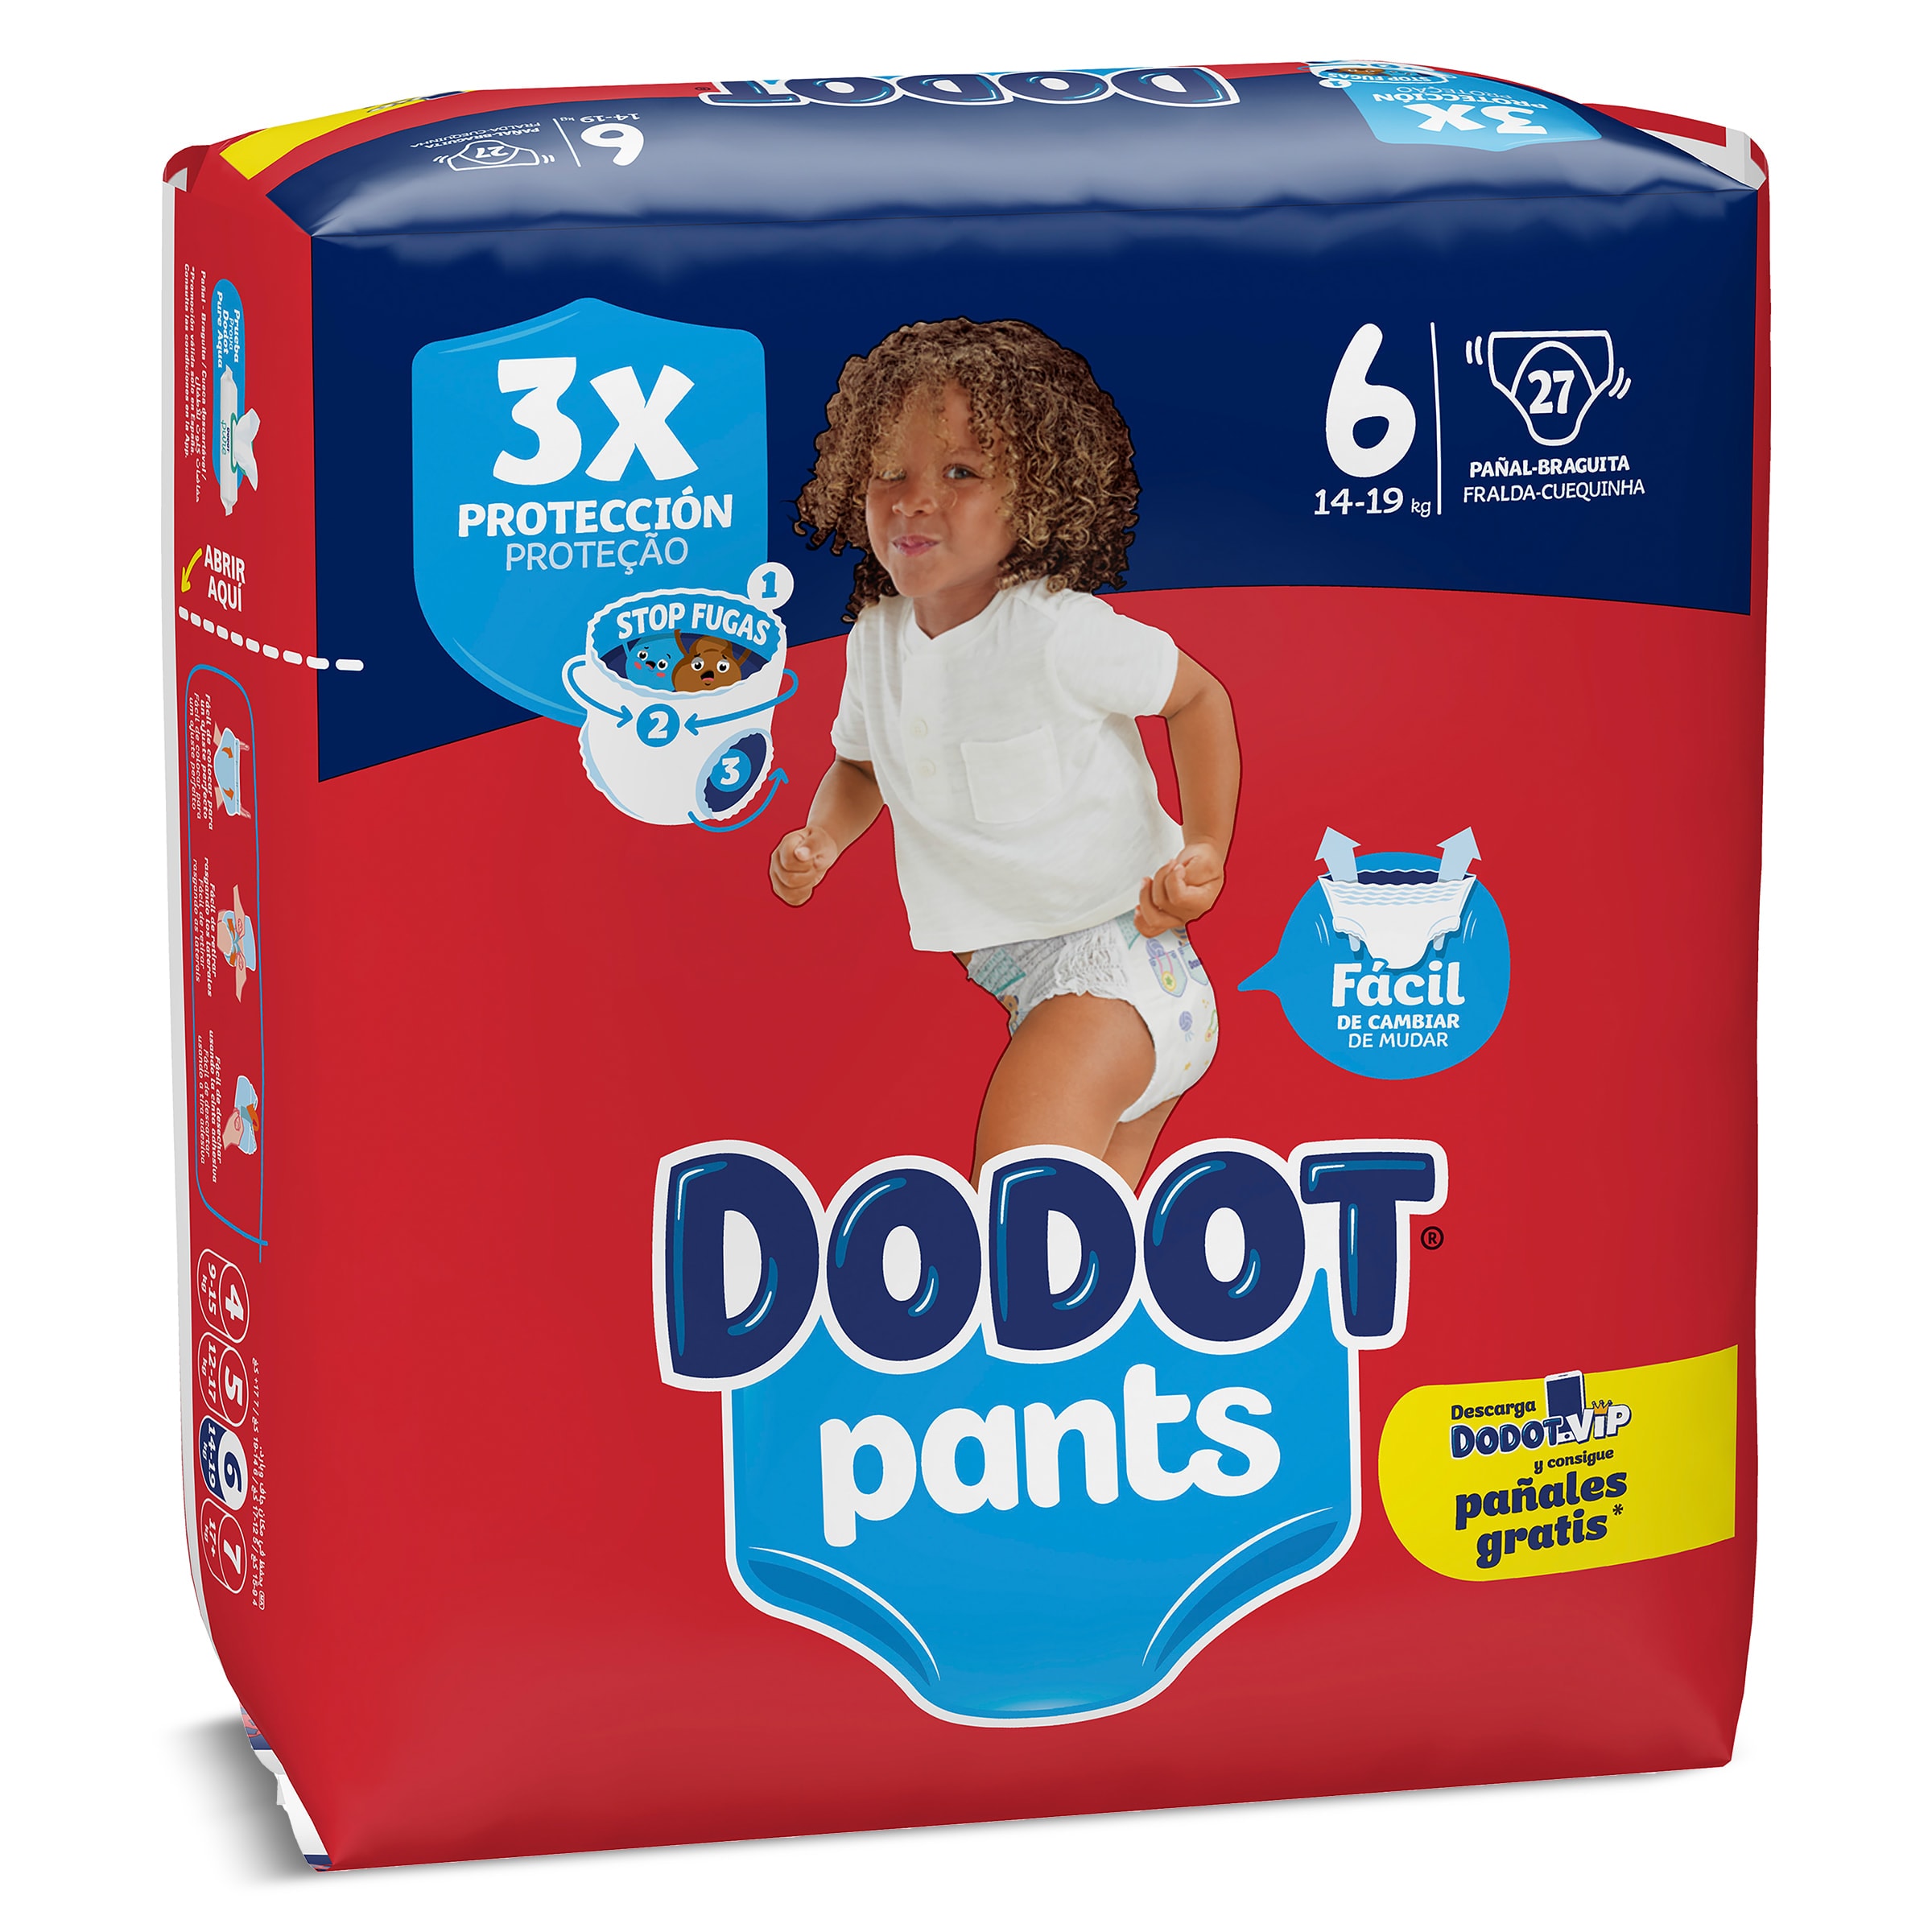 Dodot Pants, Descubre el pañal braguita de Dodot, nuestro pañal más fácil  de cambiar.  By Dodot